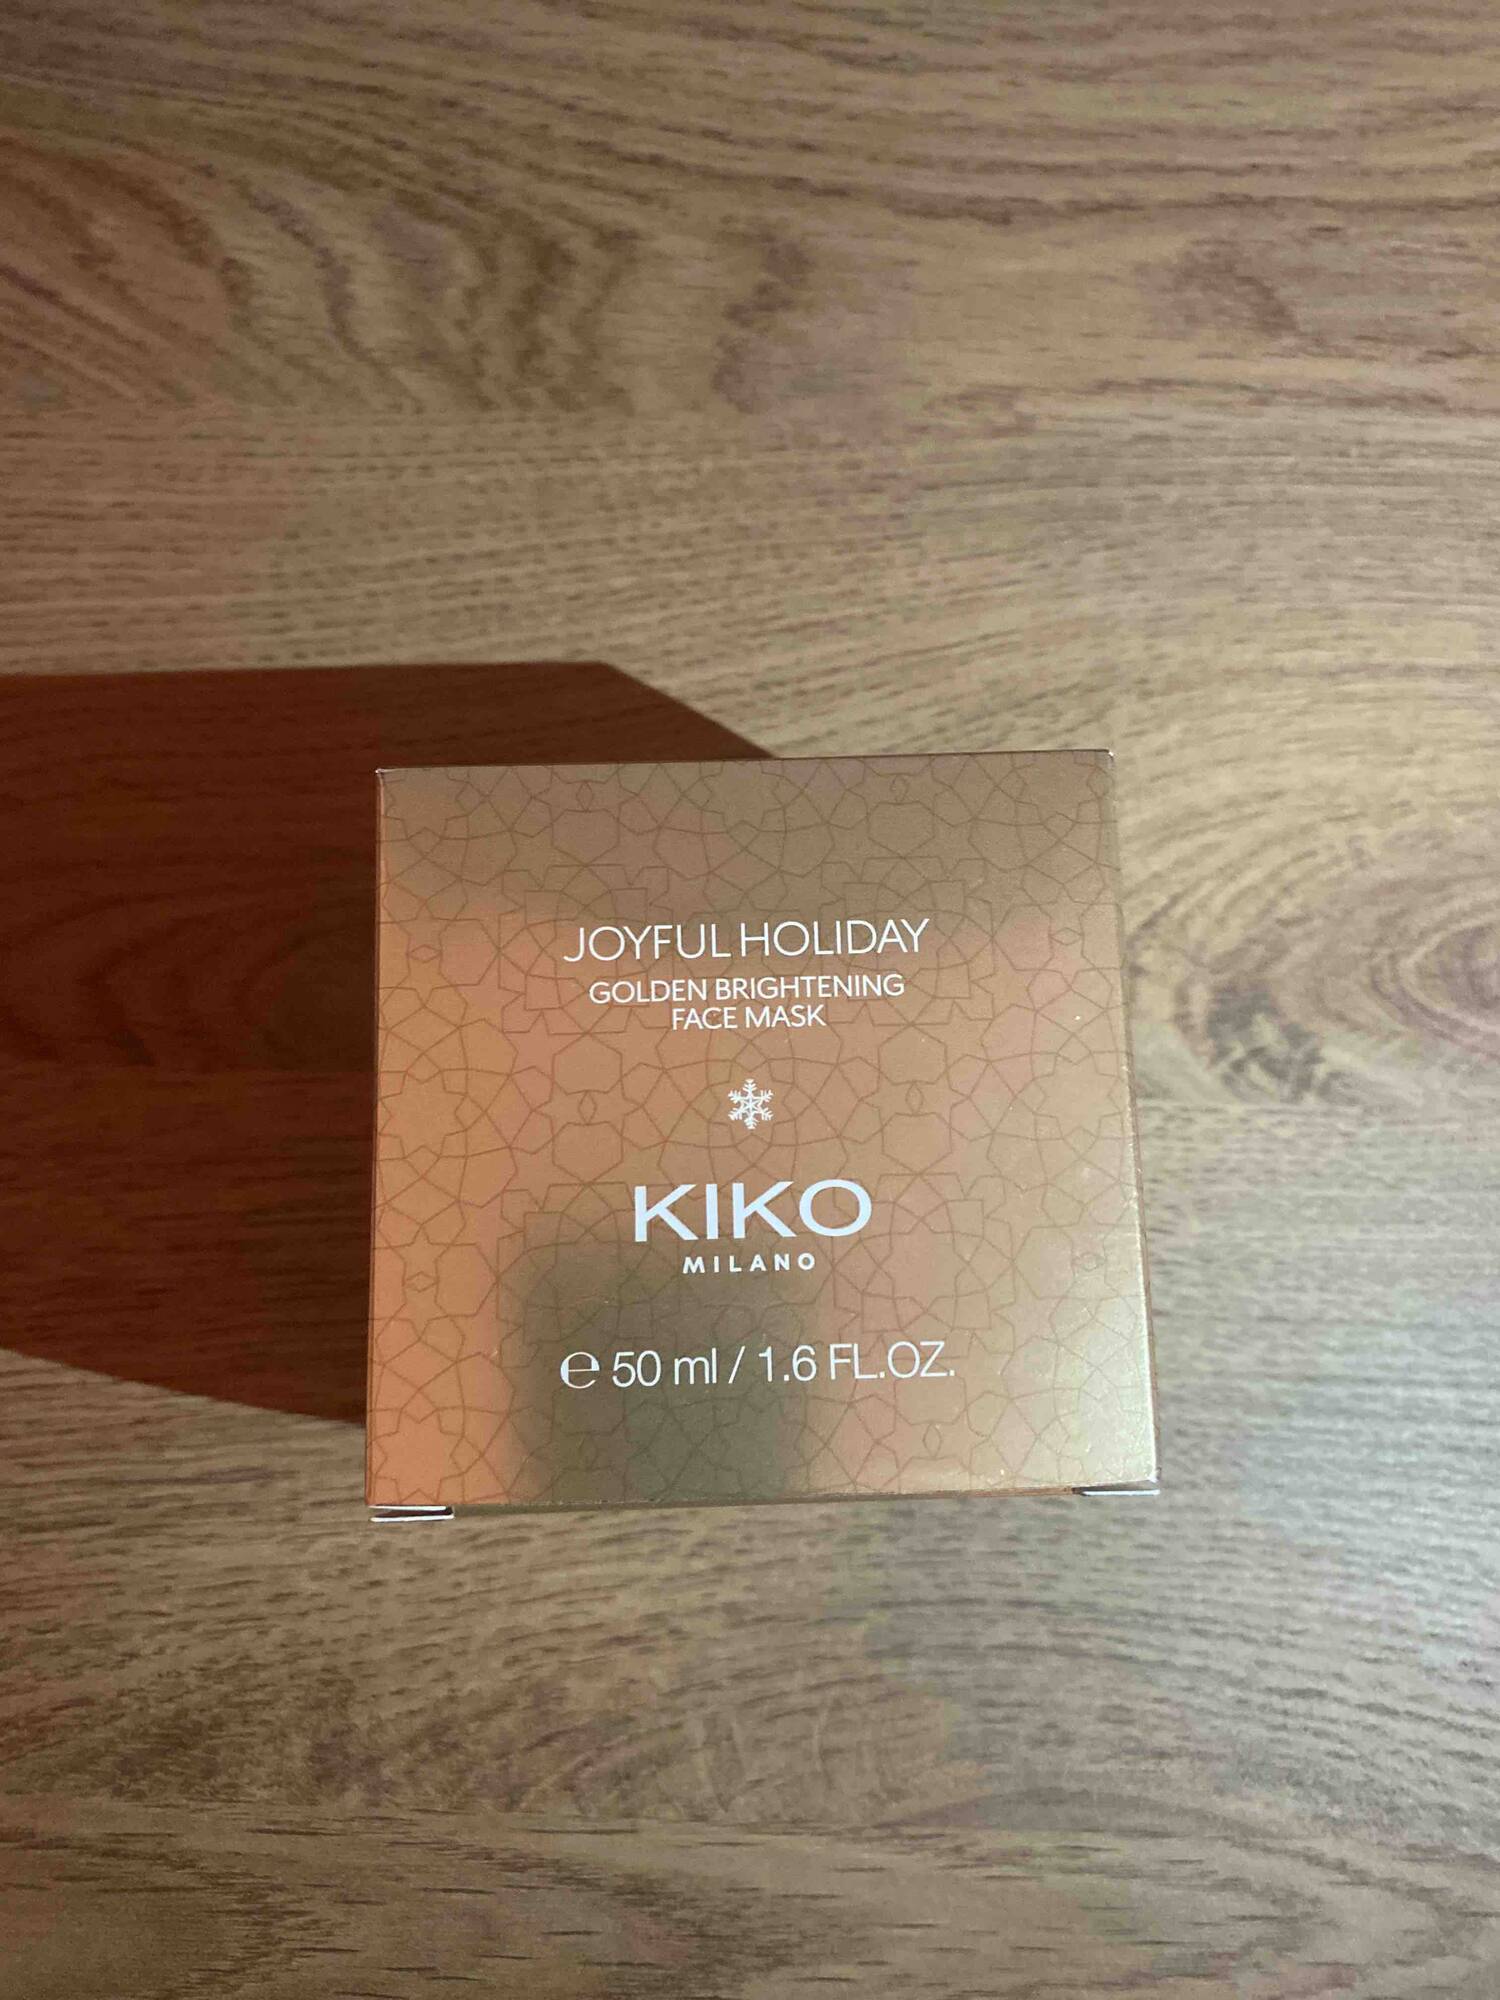 KIKO - Joyful holiday - Golden brightening face mask